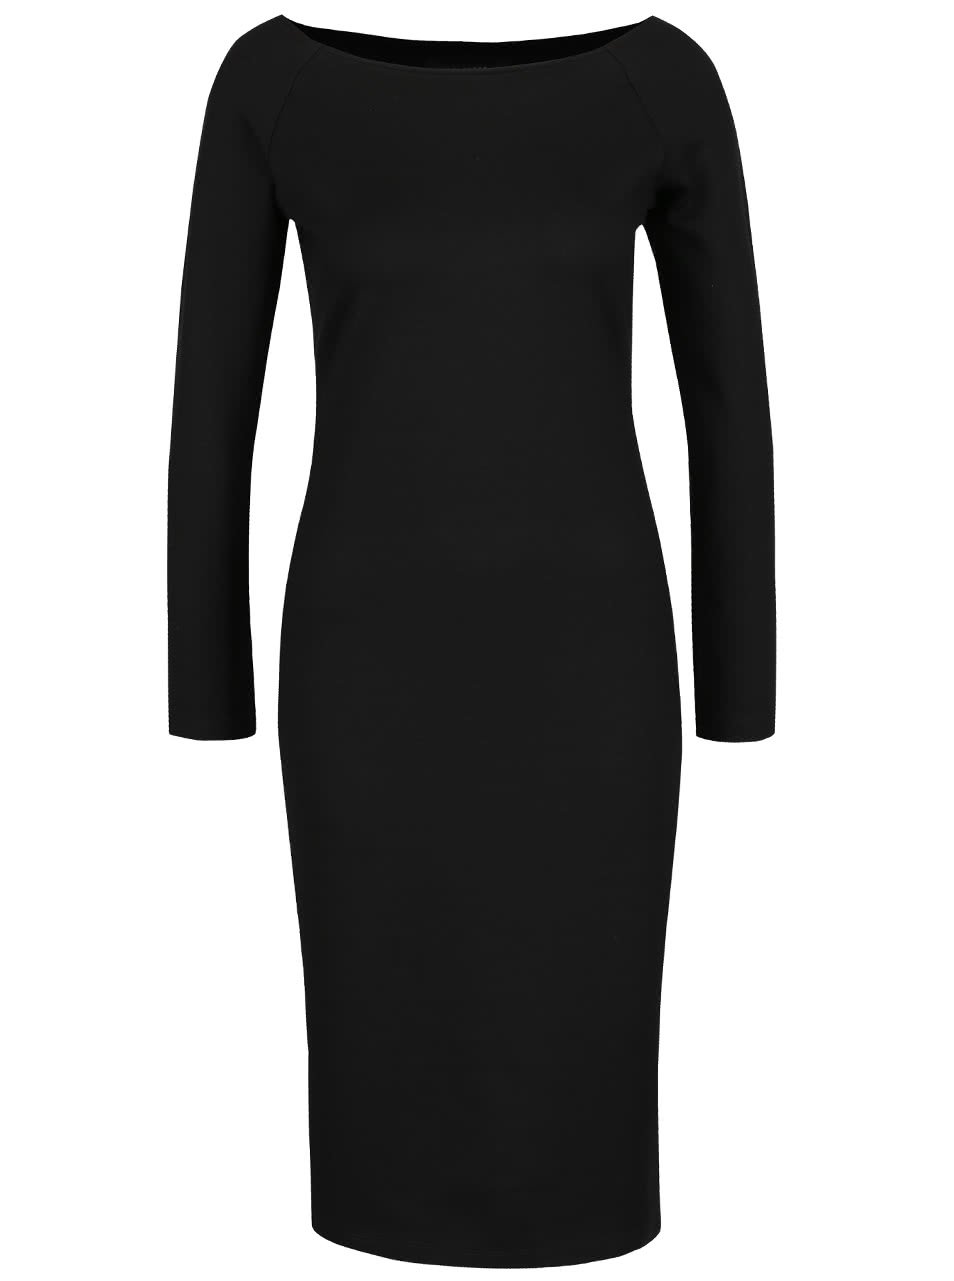 Černé šaty s dlouhými rukávy Selected Femme Lolo